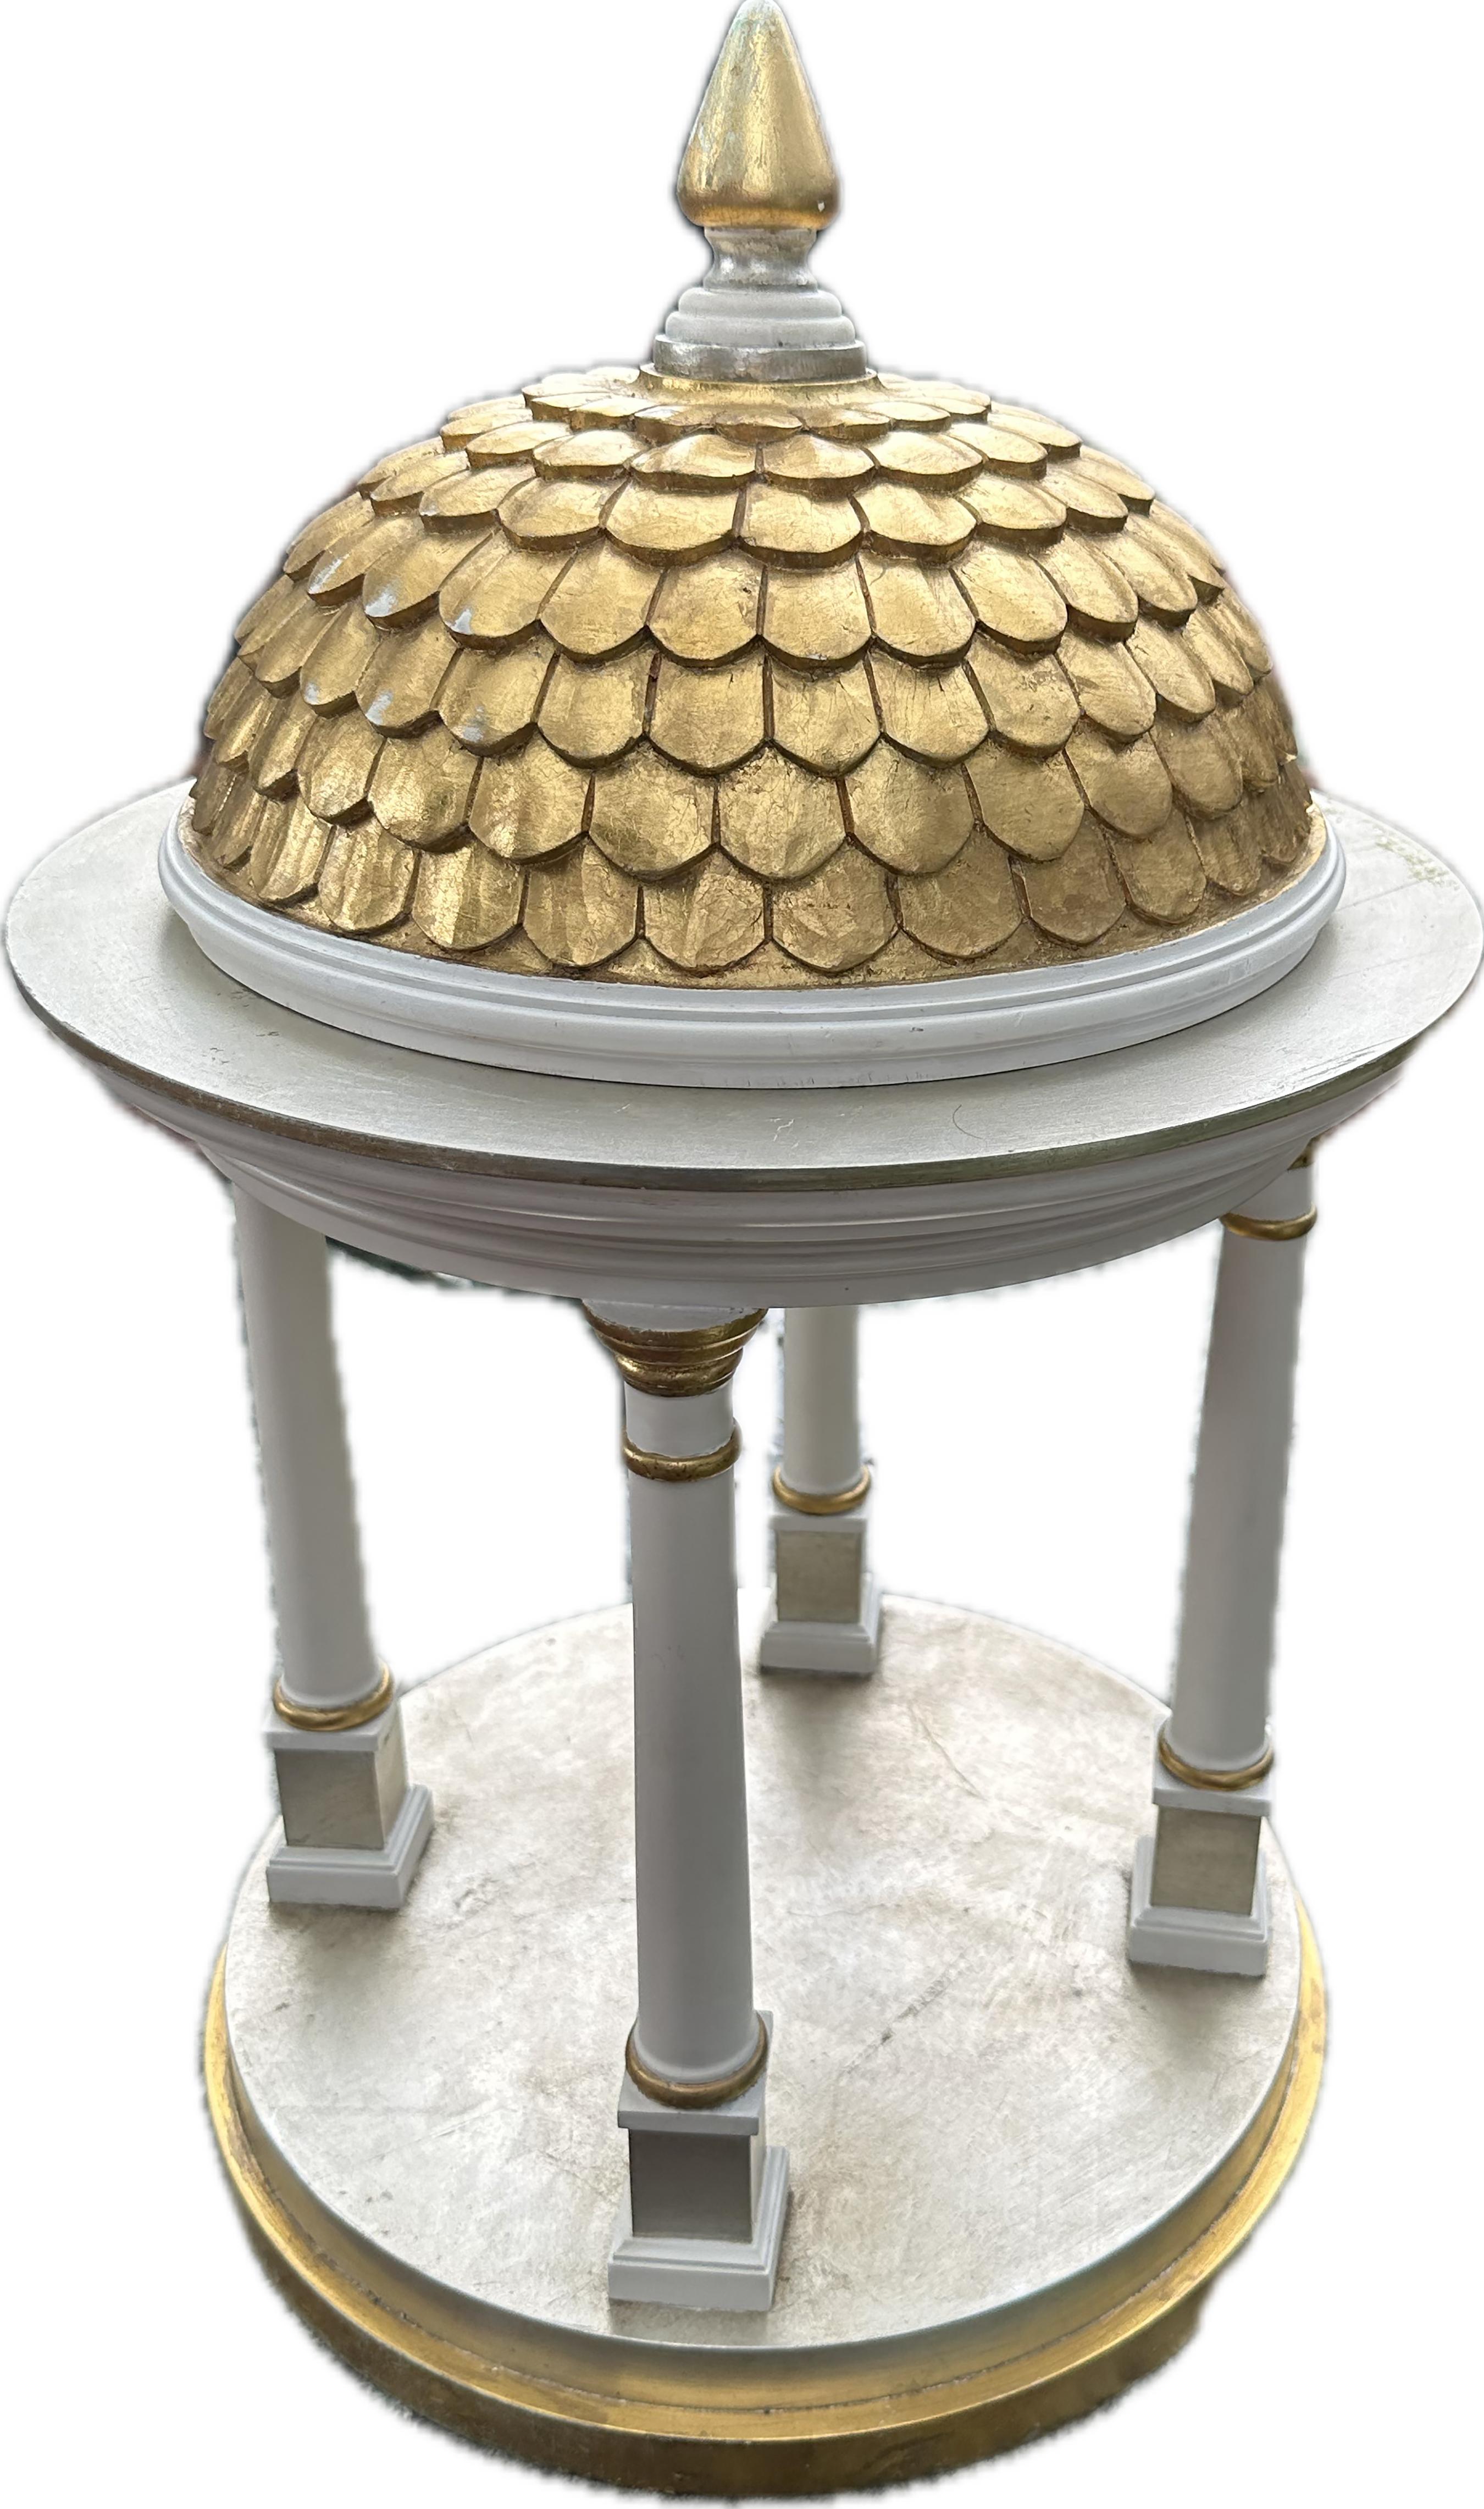 Un élégant modèle de belvédère de style tempietto avec un dôme en tuiles romanes dorées. Structure en bois peinte en blanc. Soutenu par quatre colonnes avec des garnitures dorées et accentué par un final. La base circulaire est également ornée d'une